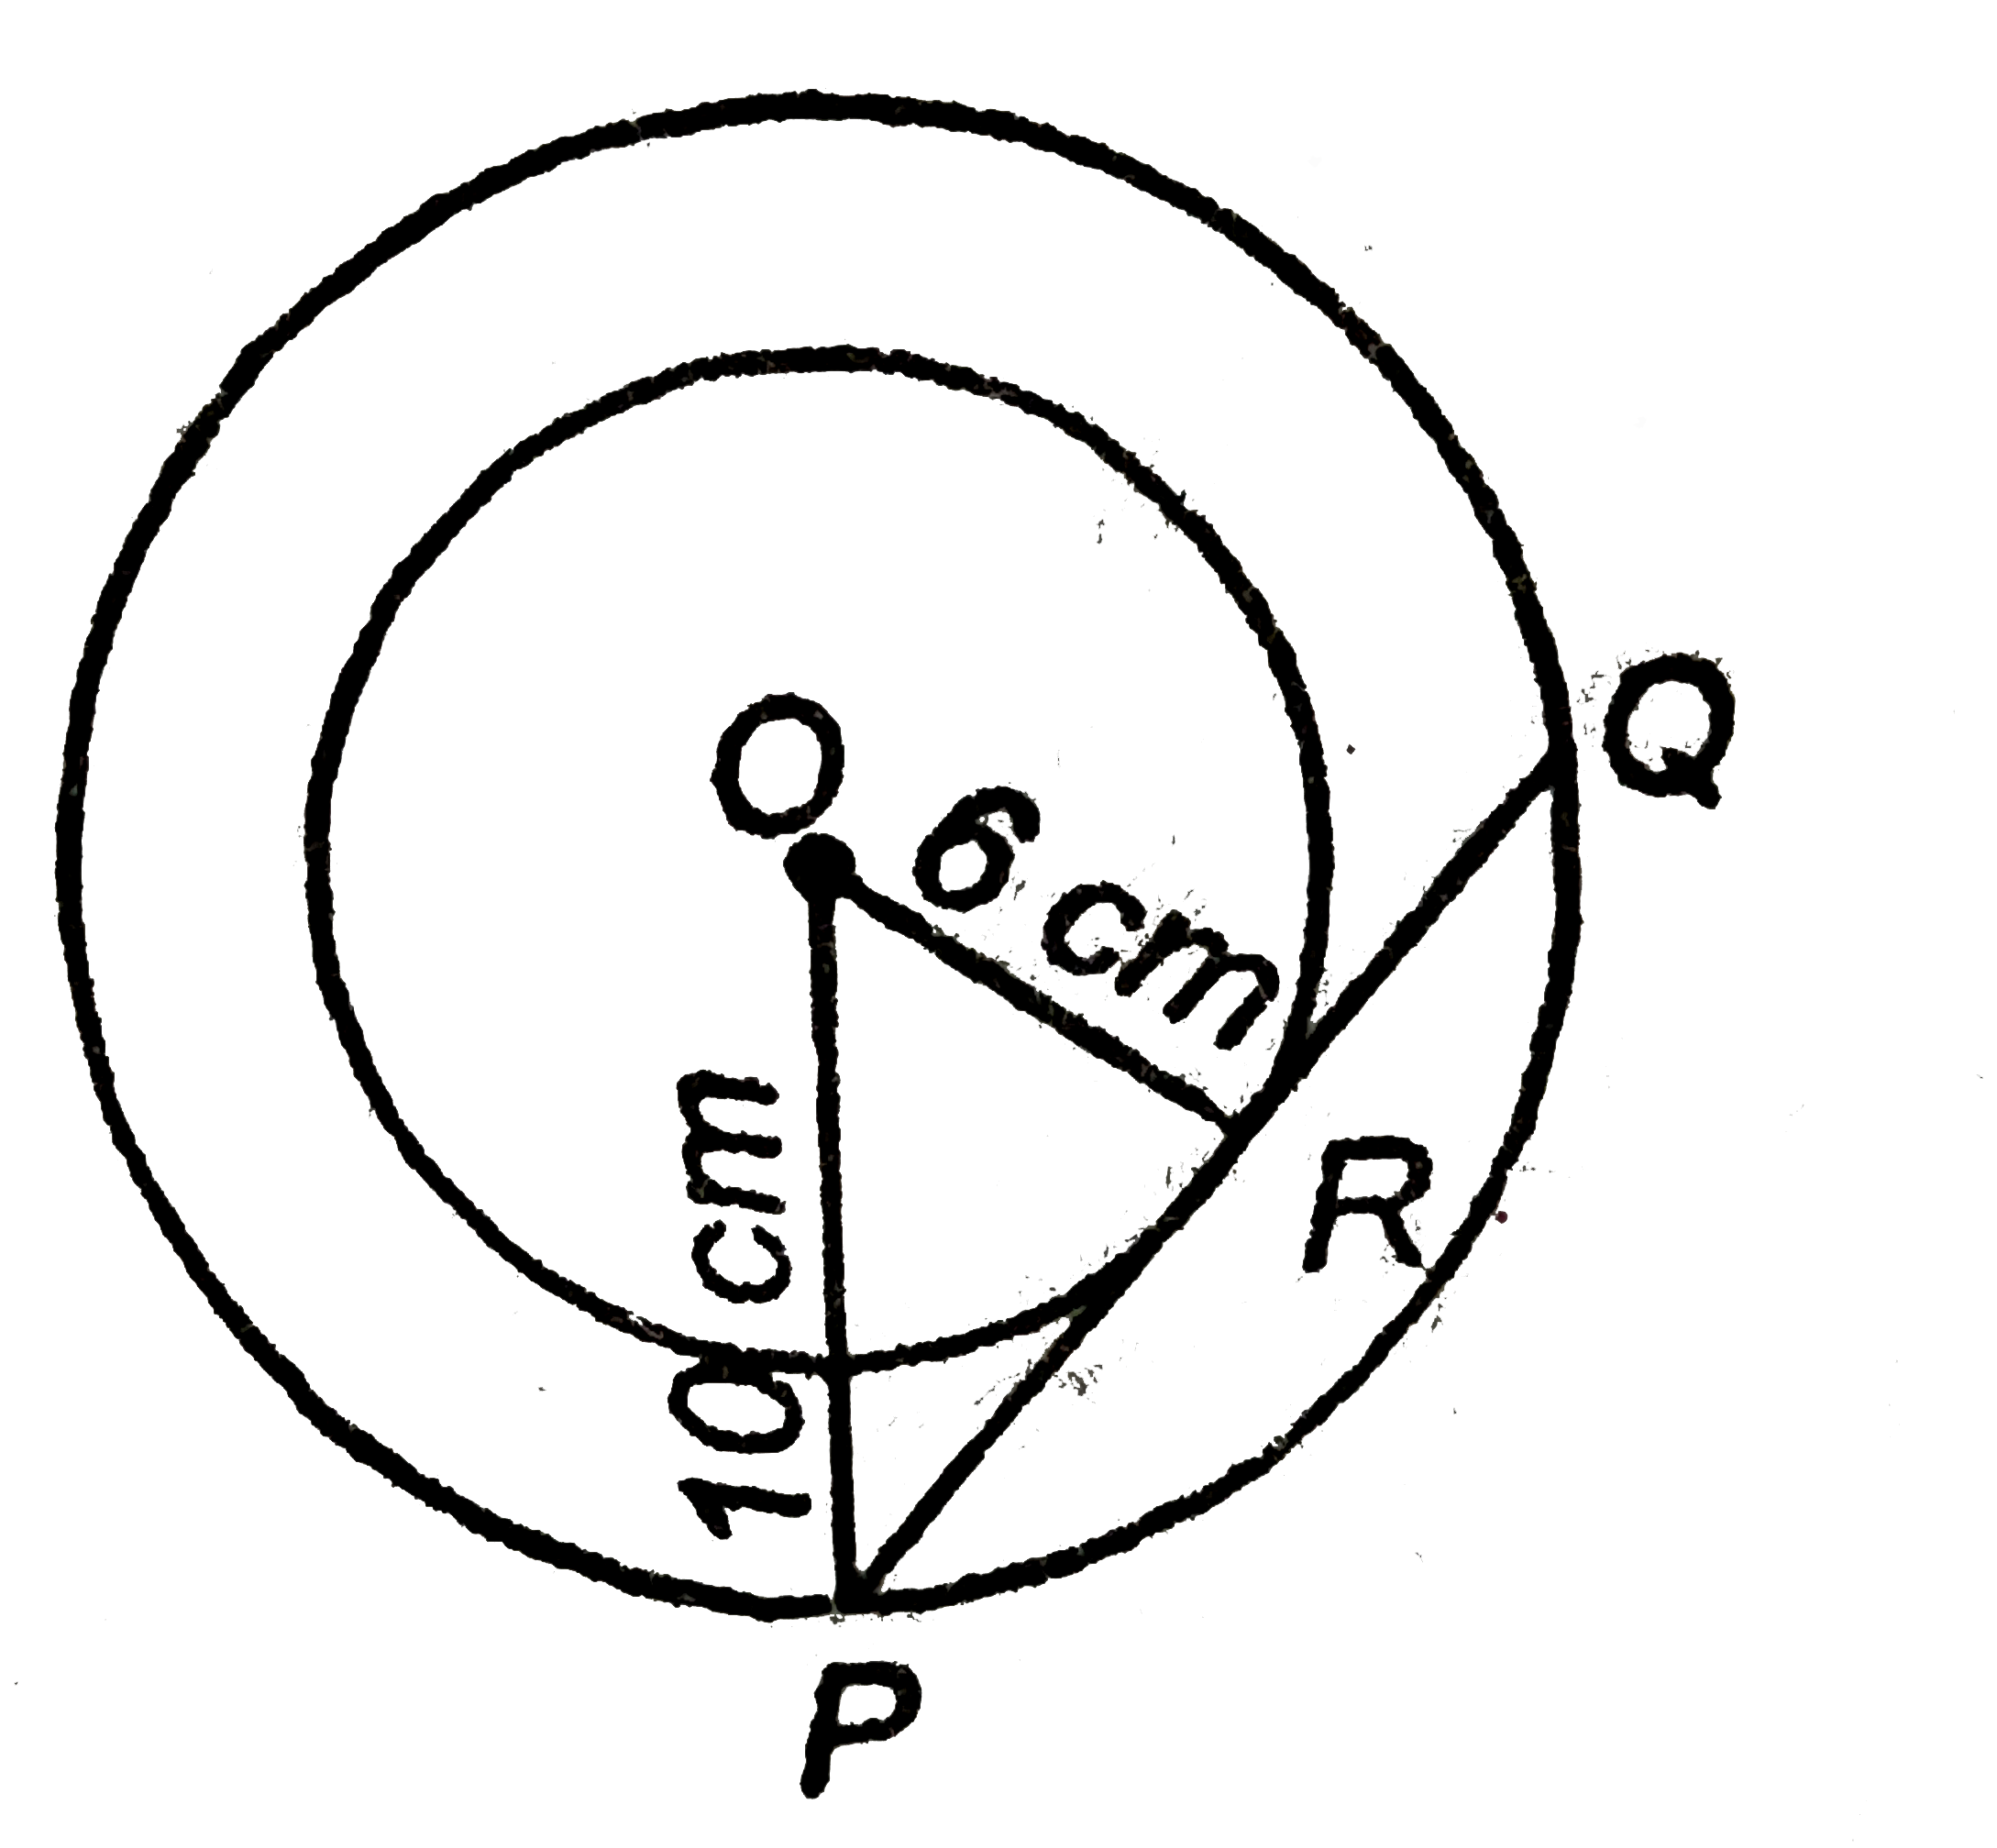 बगल के चित्र में, दो संकेन्द्रिय वृतों को त्रिज्याएँ OA और OC हैं एवं AB बड़े वृत्त की वह जीवा हैं जो छोटे वृत्त को स्पर्श करती हैं, तो निम्नलिखित में कौन सत्य हैं?